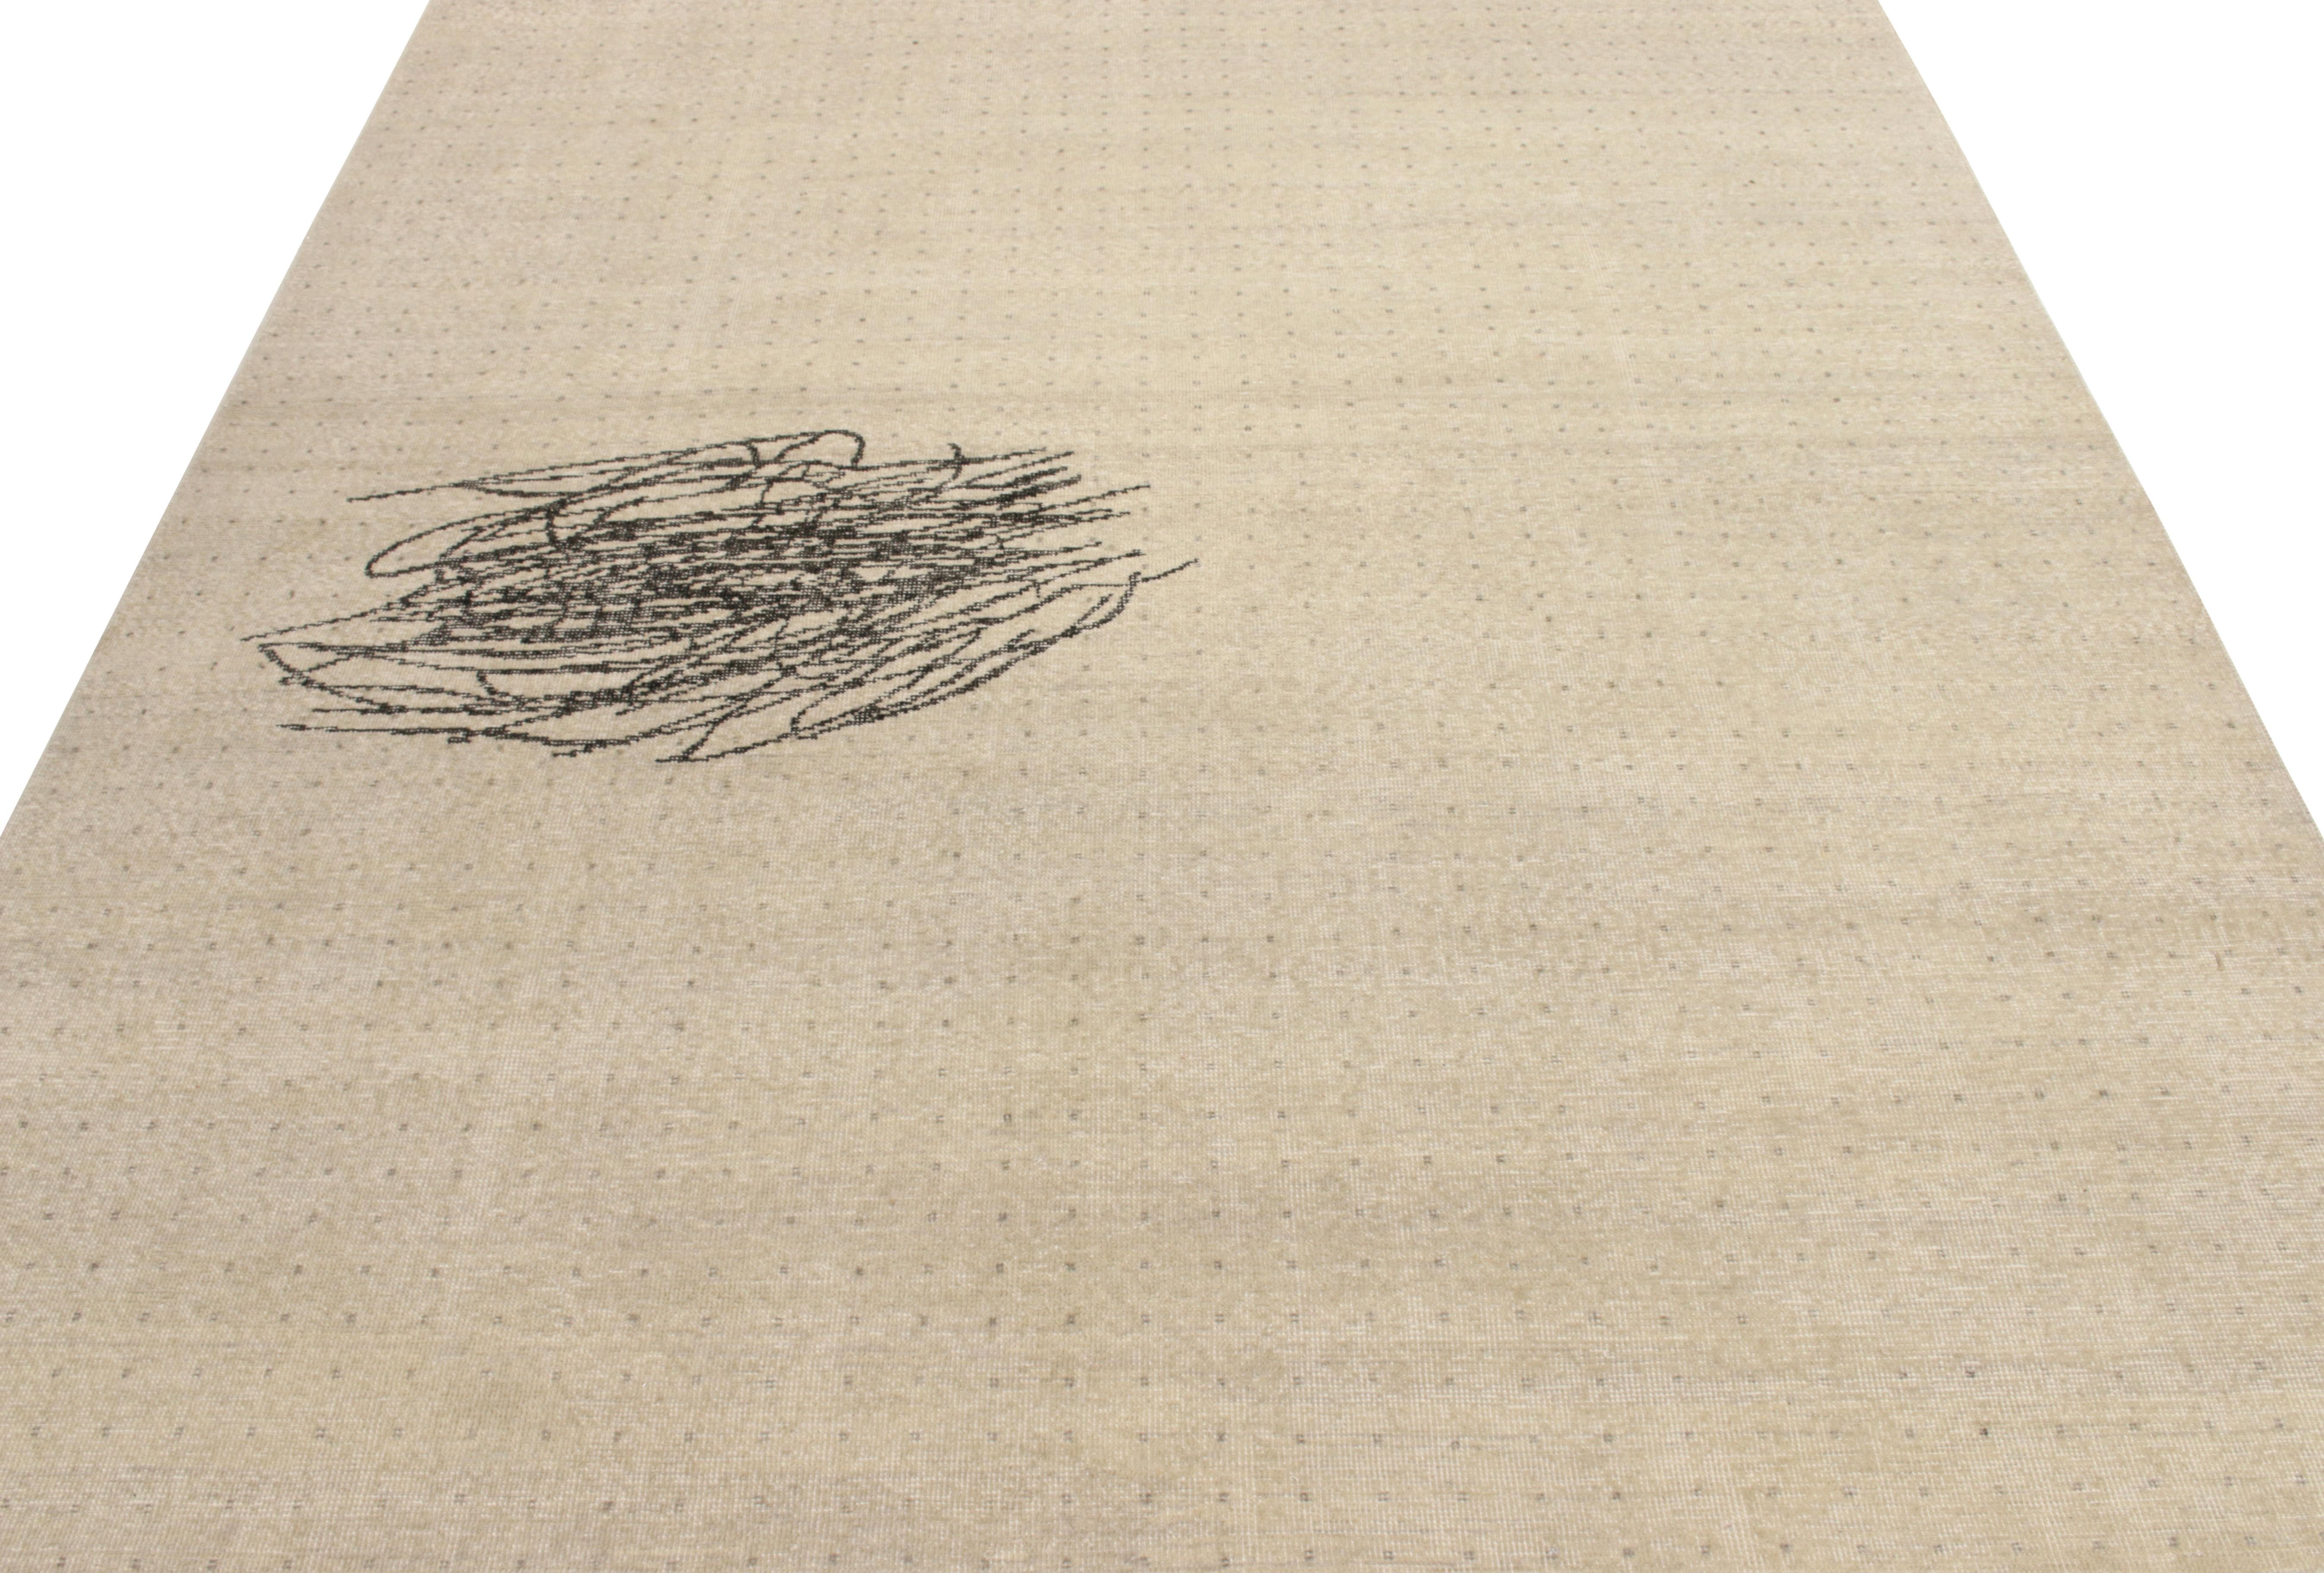 Der handgeknüpfte Wollteppich im Format 8x10 ist ein abstrakter Teppich, der mit Punkten und Kritzelmustern in Grau und Schwarz einen modernen Distressed-Stil zeigt. Aus der Homage-Kollektion von Rug & Kilim, einem pflegeleichten, angenehm zu